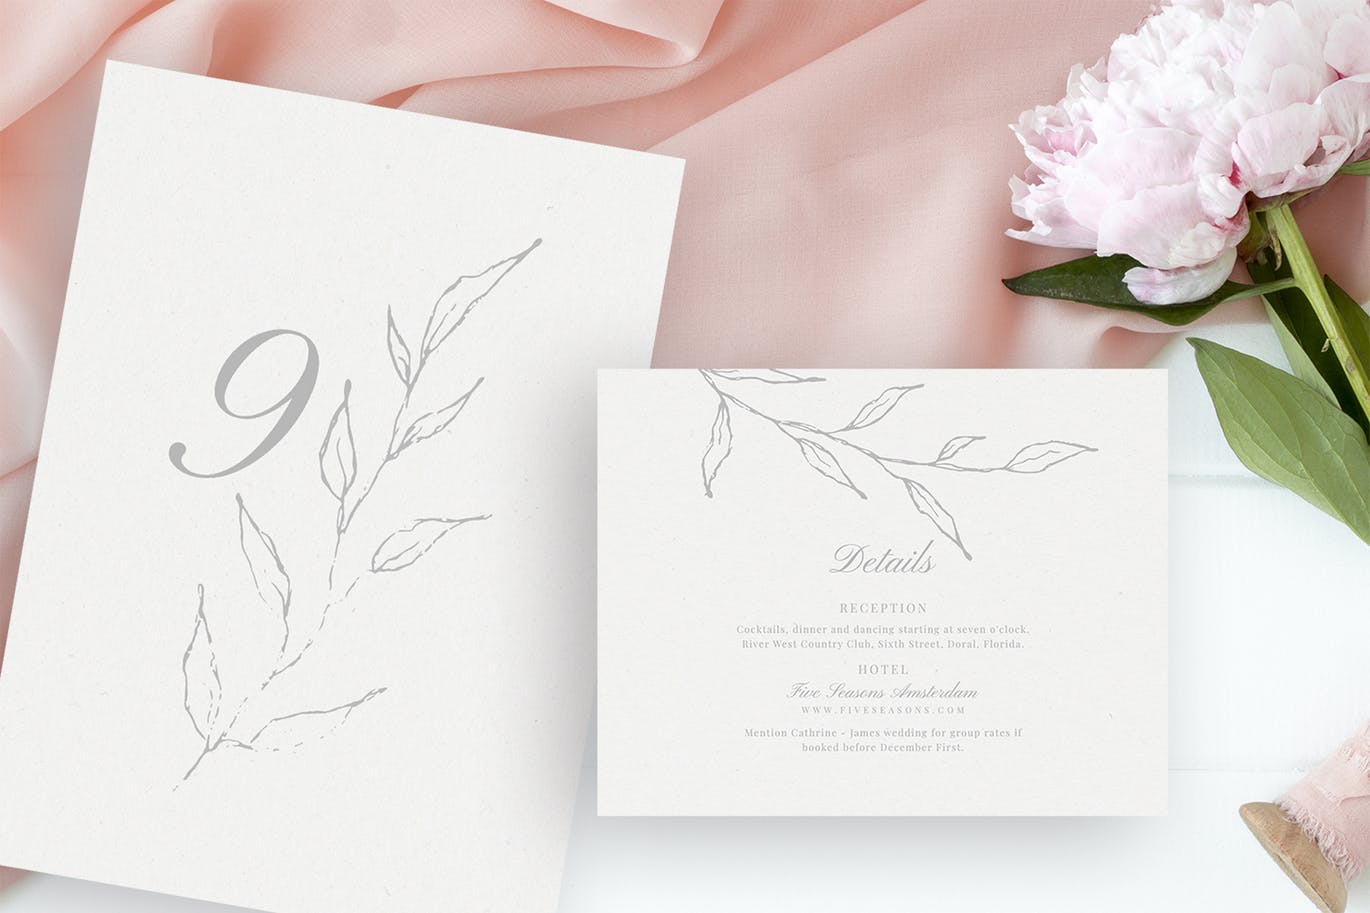 优雅手绘花卉图案婚礼主题设计素材包 Elegant Floral Wedding Suite插图(3)